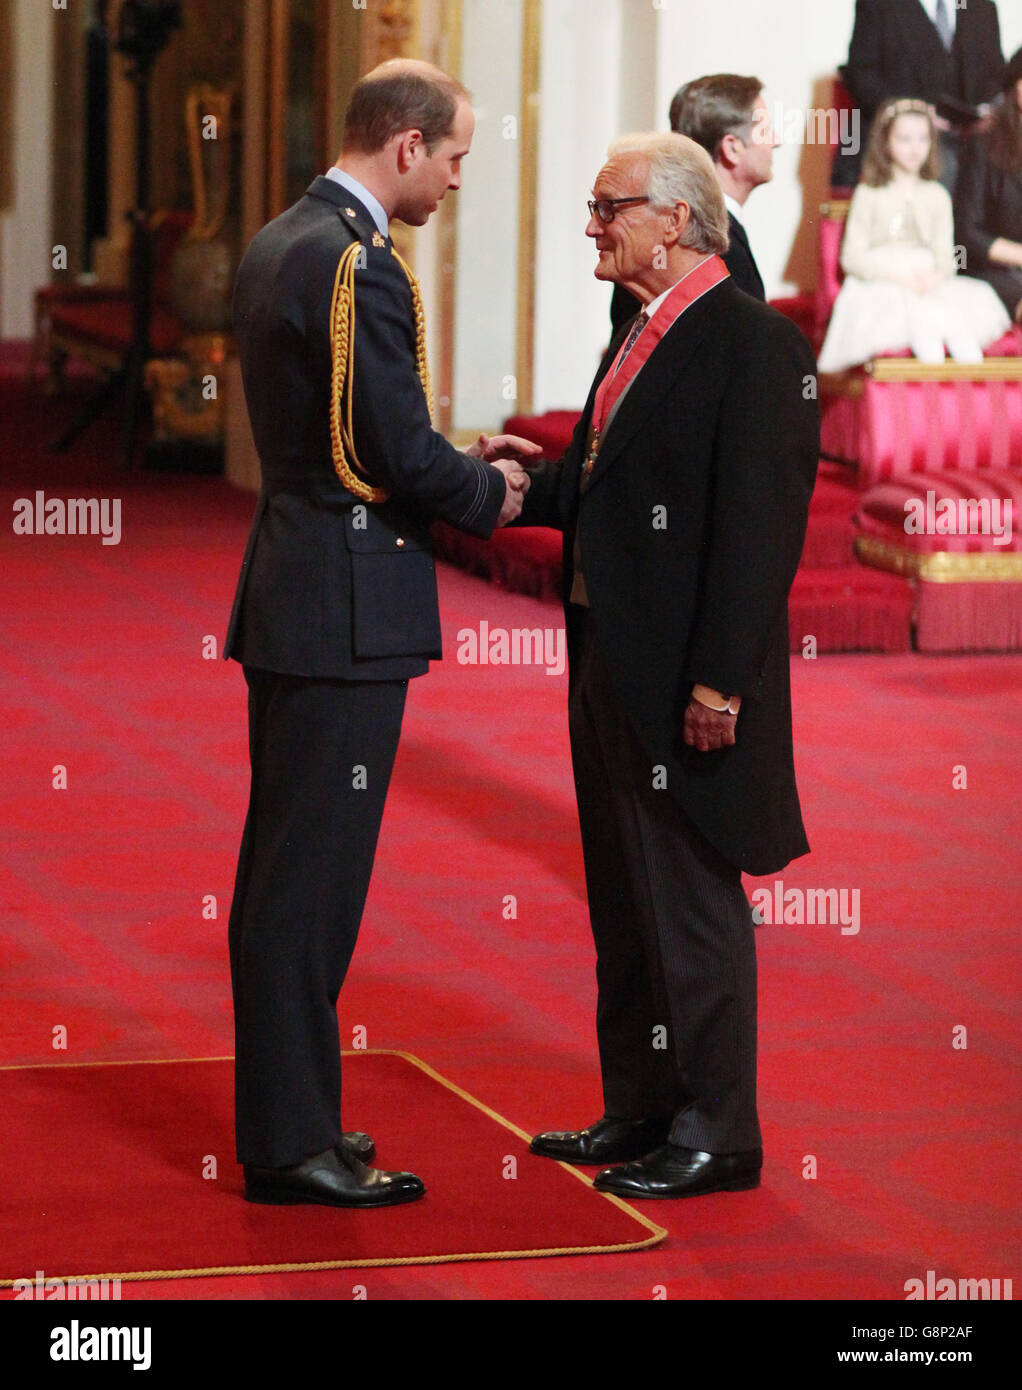 Fondateur et PDG de Save the Elephants le Dr Iain Douglas-Hamilton est nommé commandant de l'ordre de l'Empire britannique (CBE) par le duc de Cambridge lors d'une cérémonie d'investiture à Buckingham Palace, Londres. Banque D'Images